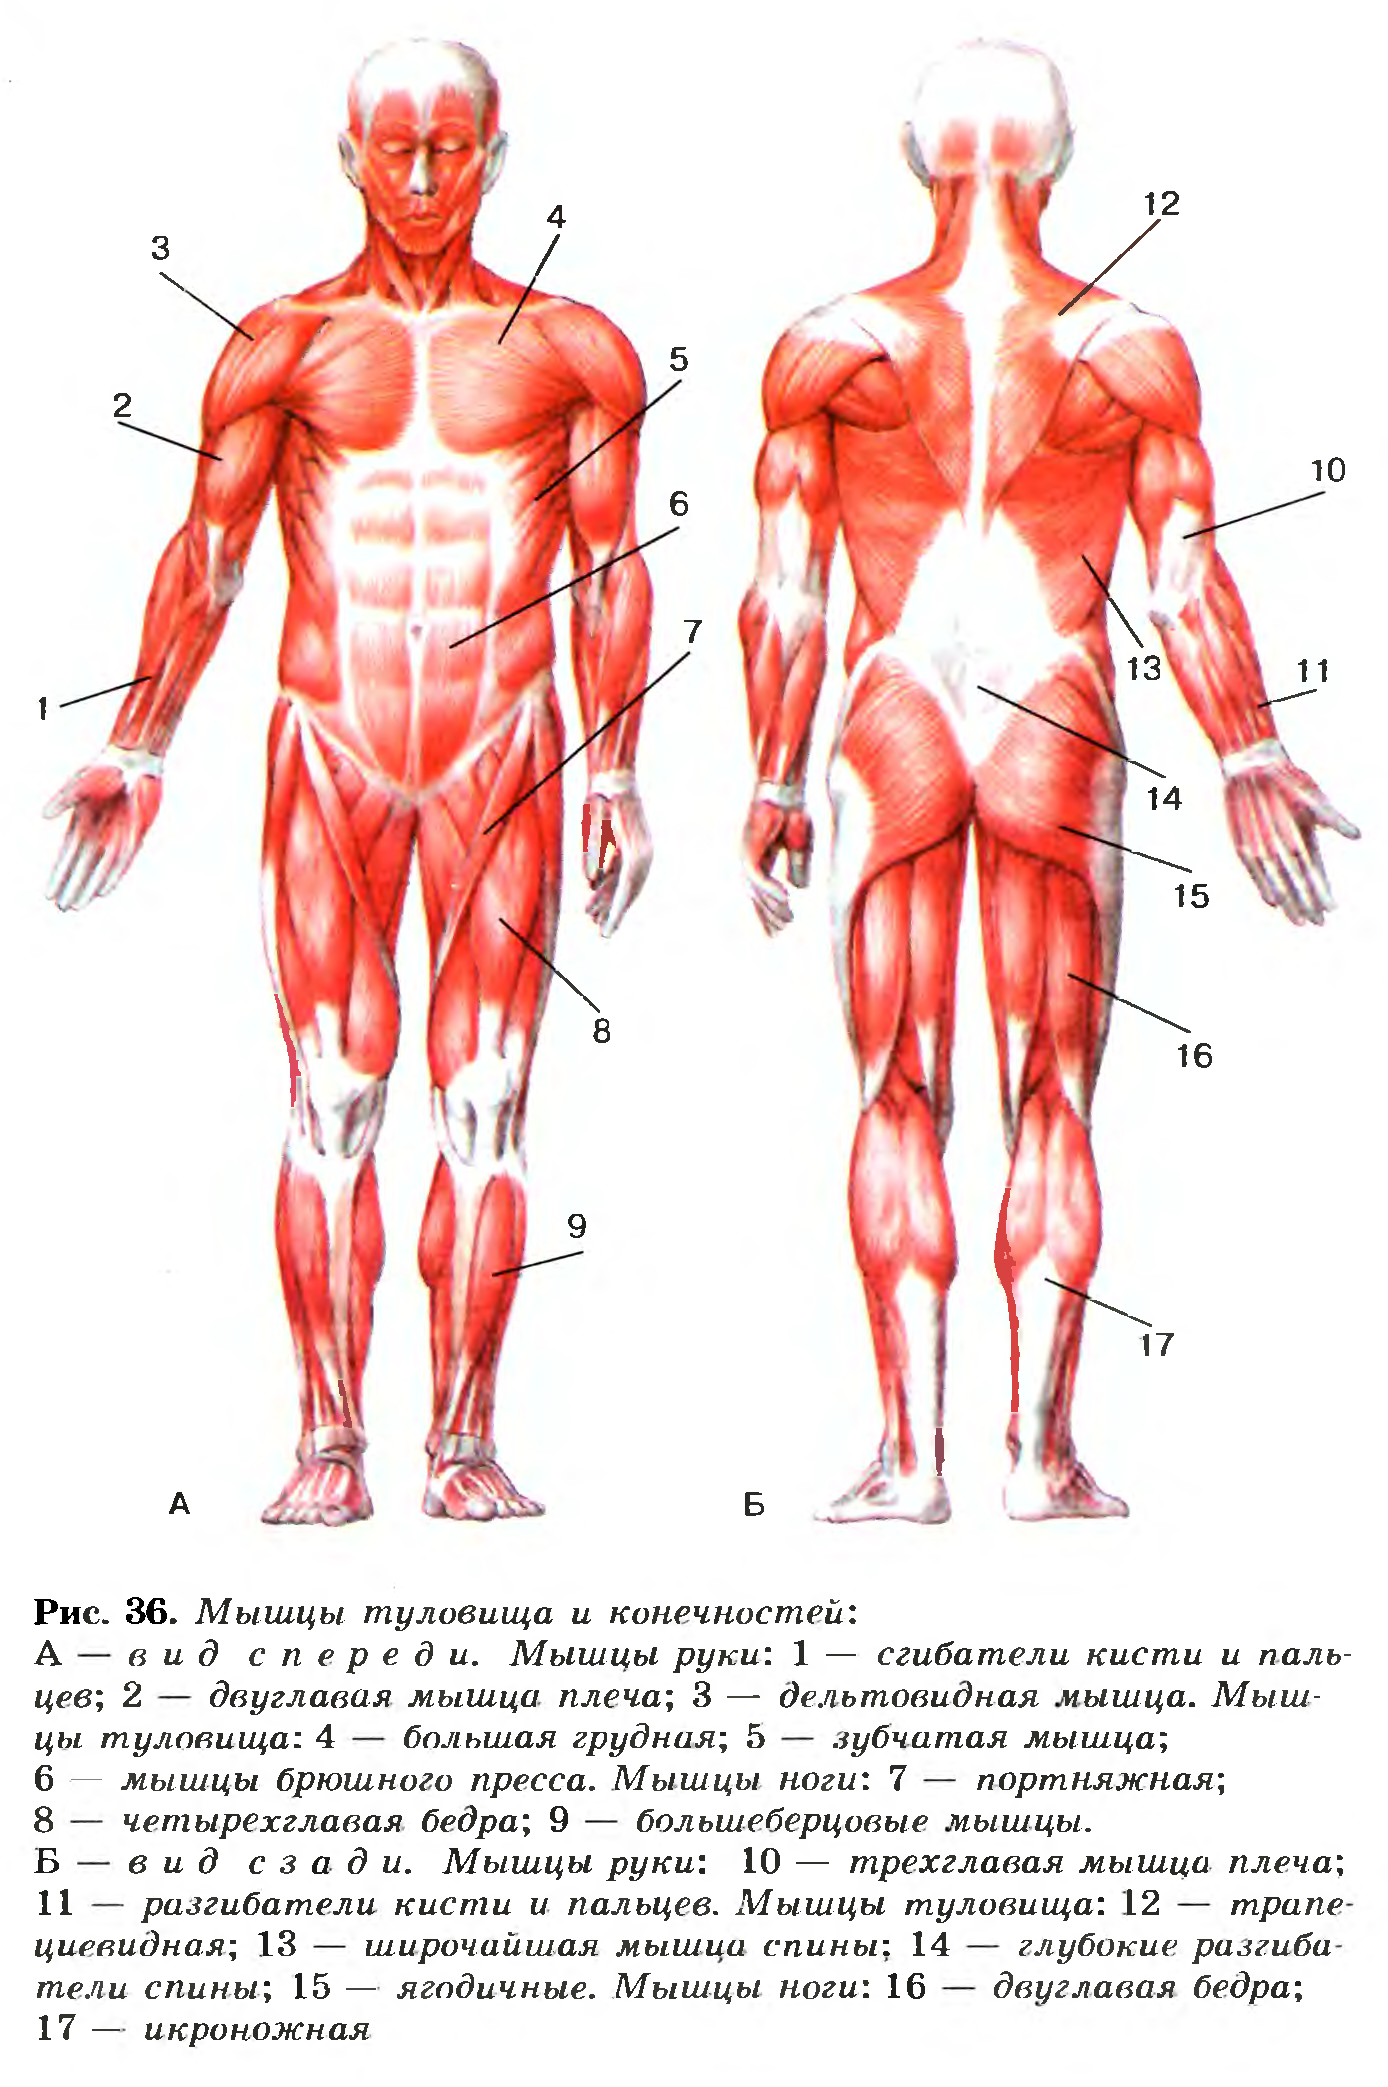 Активная мышца. Биология 8 класс мышцы человека вид сзади и спереди. Мышцы туловища и конечностей анатомия. Строение мышц туловища и конечностей человека. Мышцы туловища спереди название.